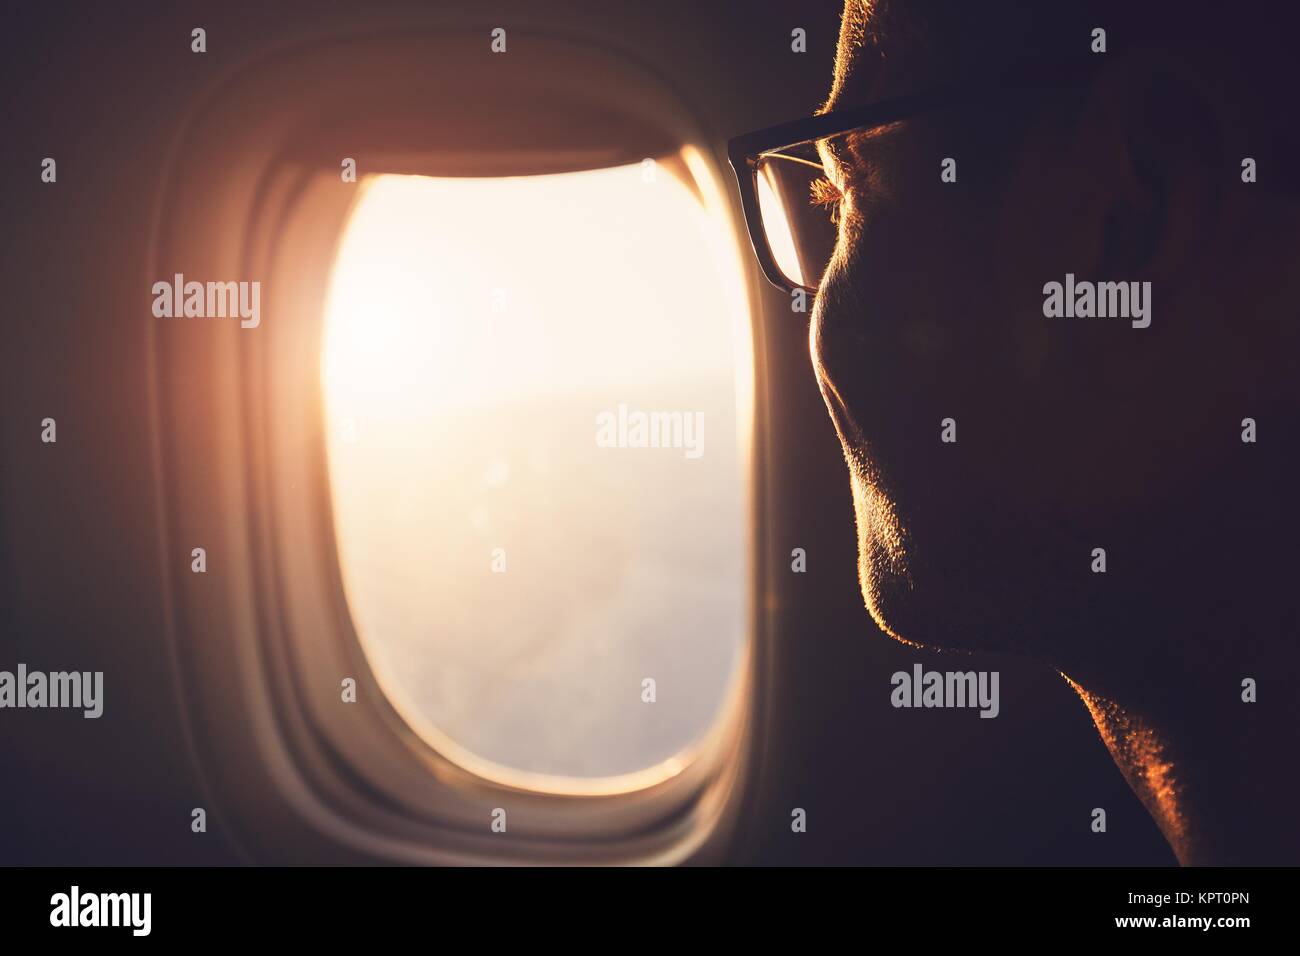 Jóvenes en busca de pasajeros a través de la ventana del avión durante el amanecer. Foto de stock